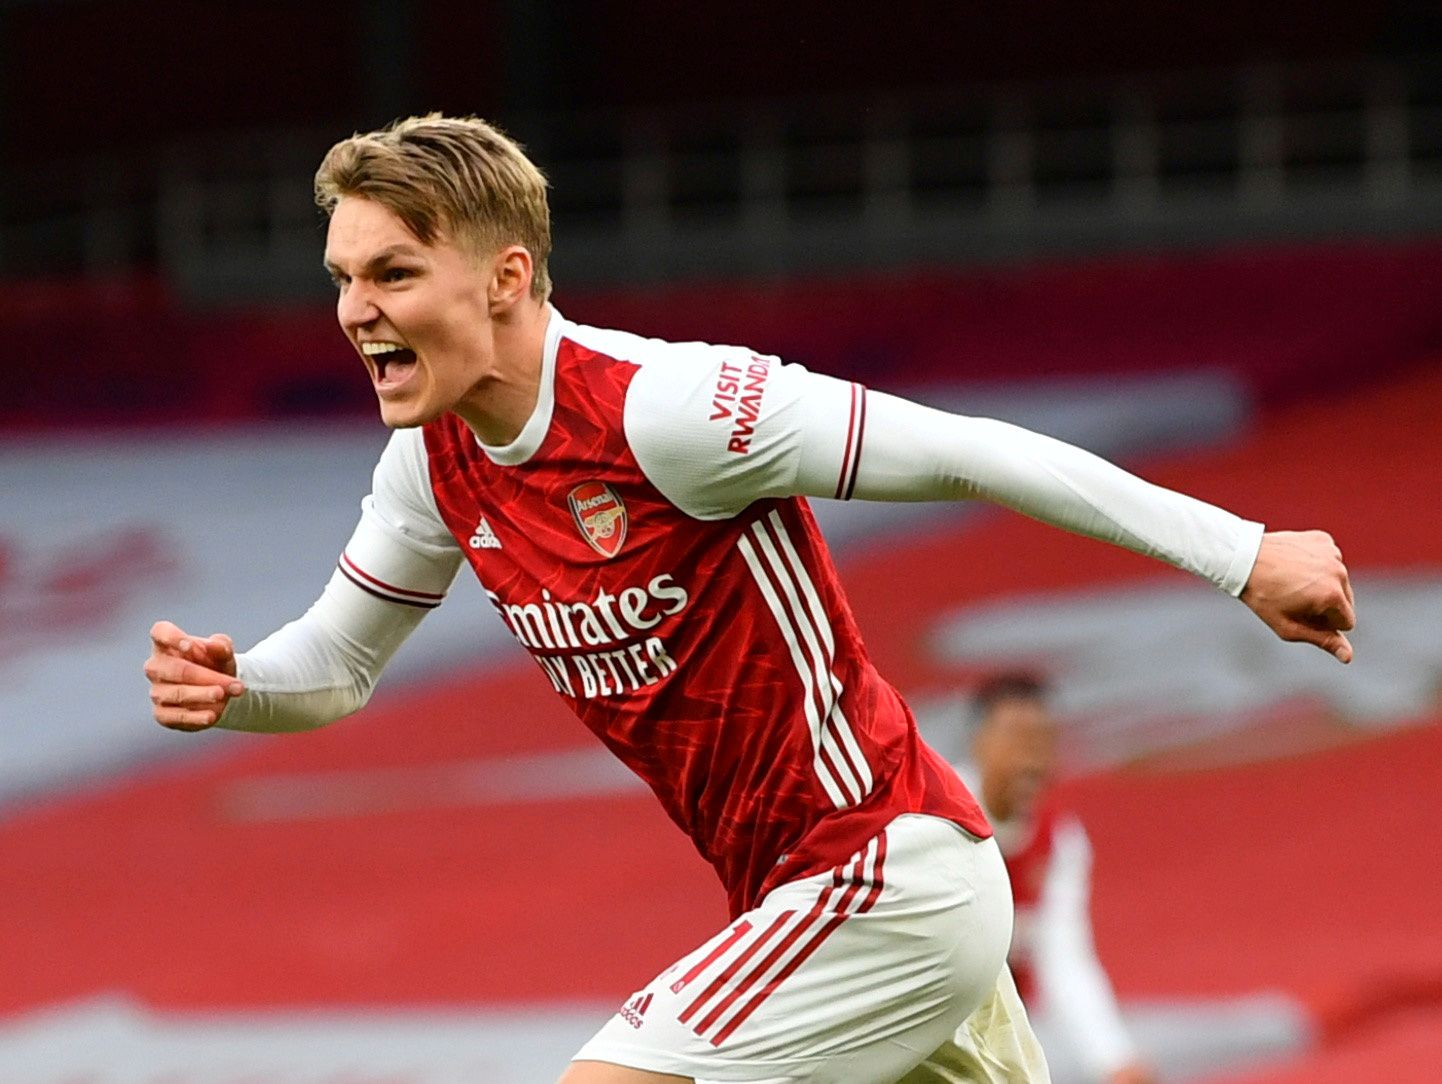 DIREKTE: Følg Martin Ødegaard i storkampen mot Liverpool